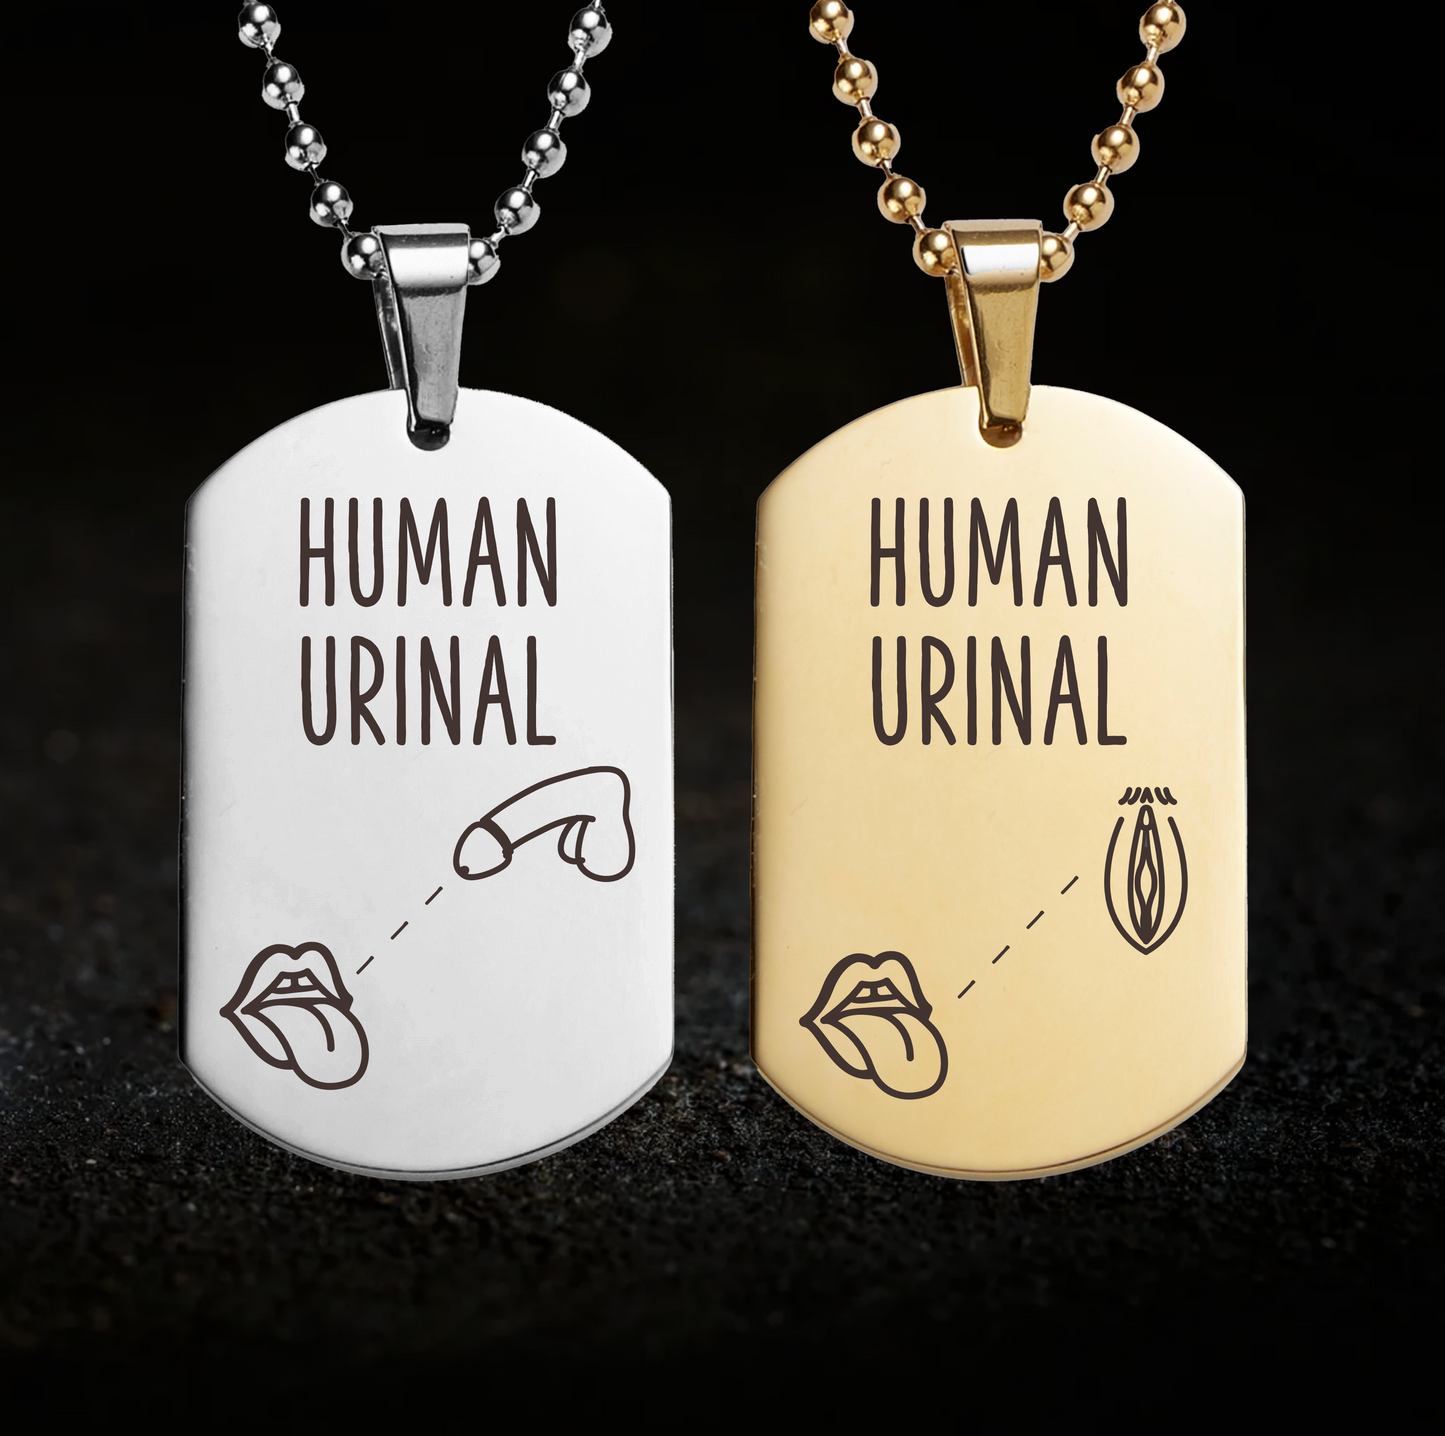 Human Urinal Necklace